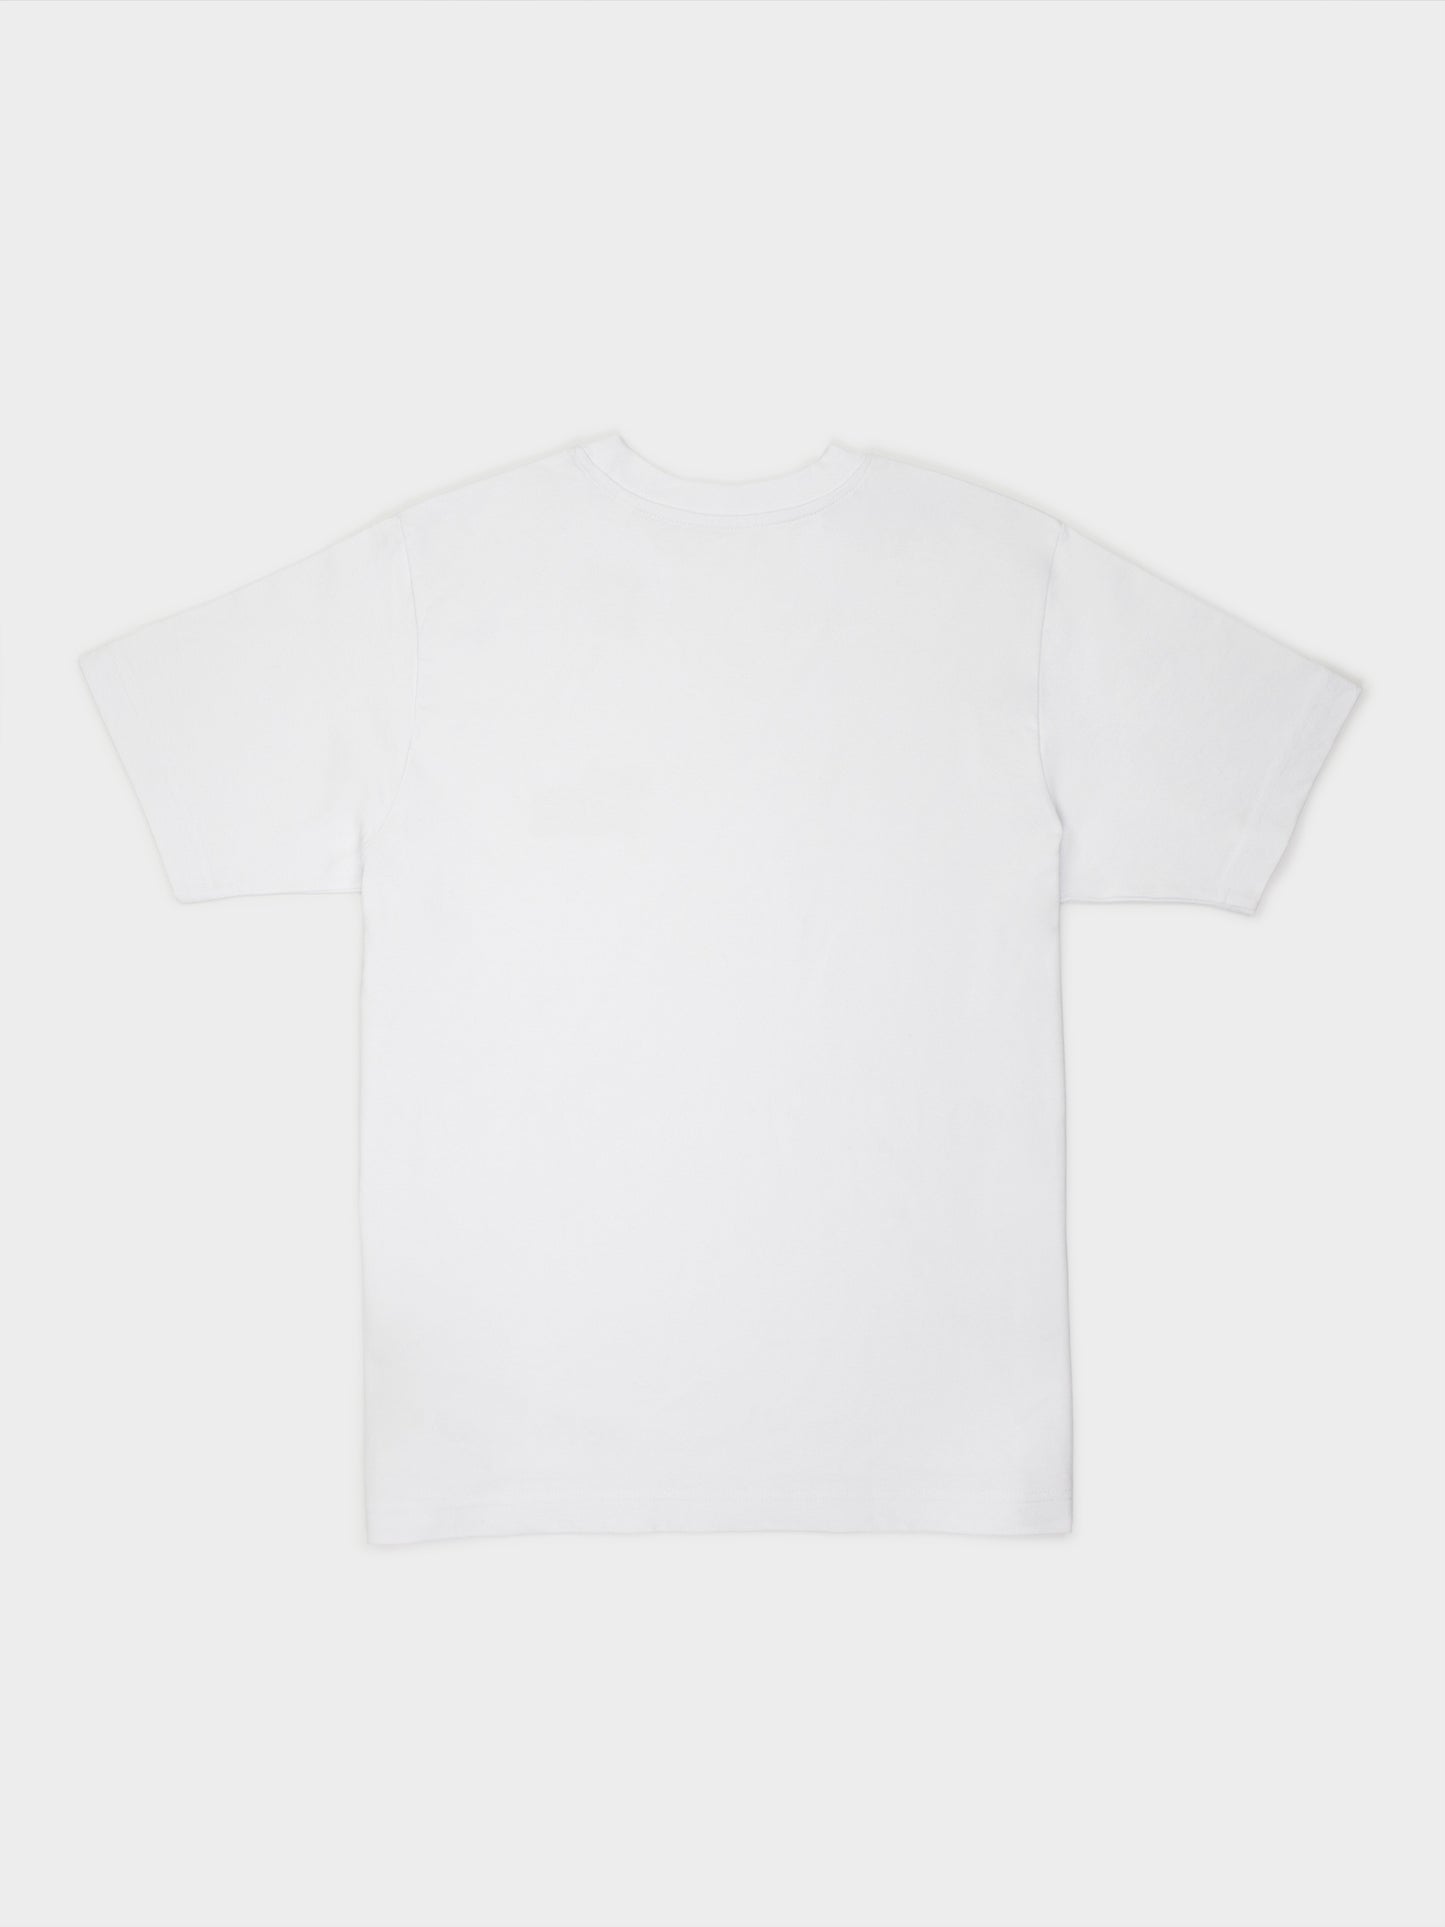 T-Shirt: Aurels Alarma Pyjama (weiß) - nurcool